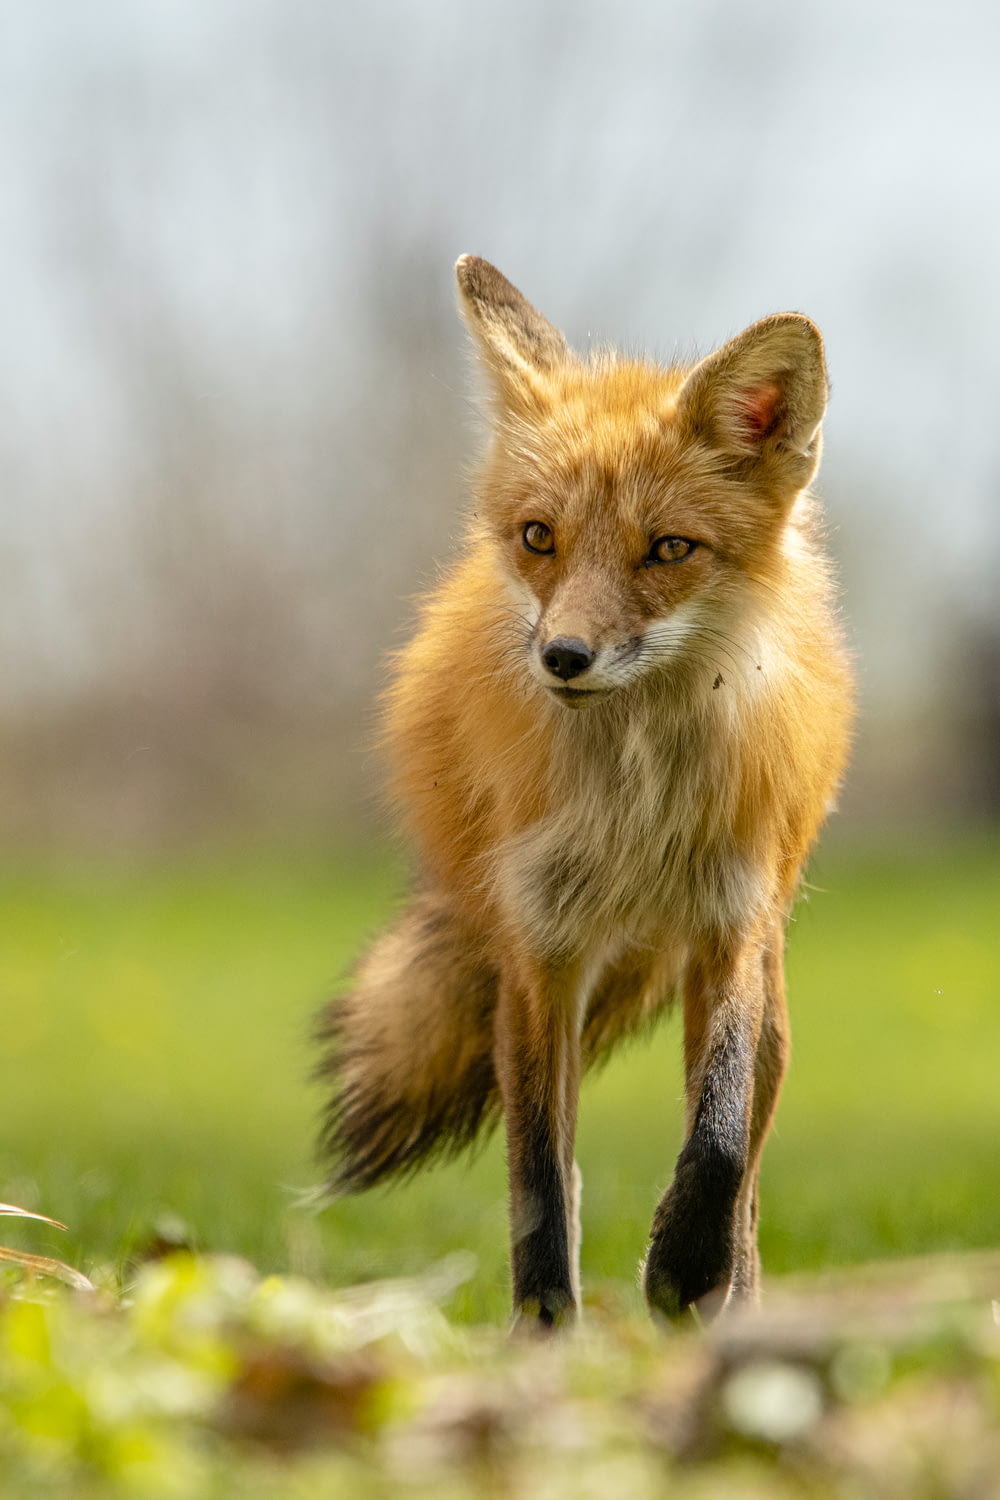 a red fox running across a lush green field